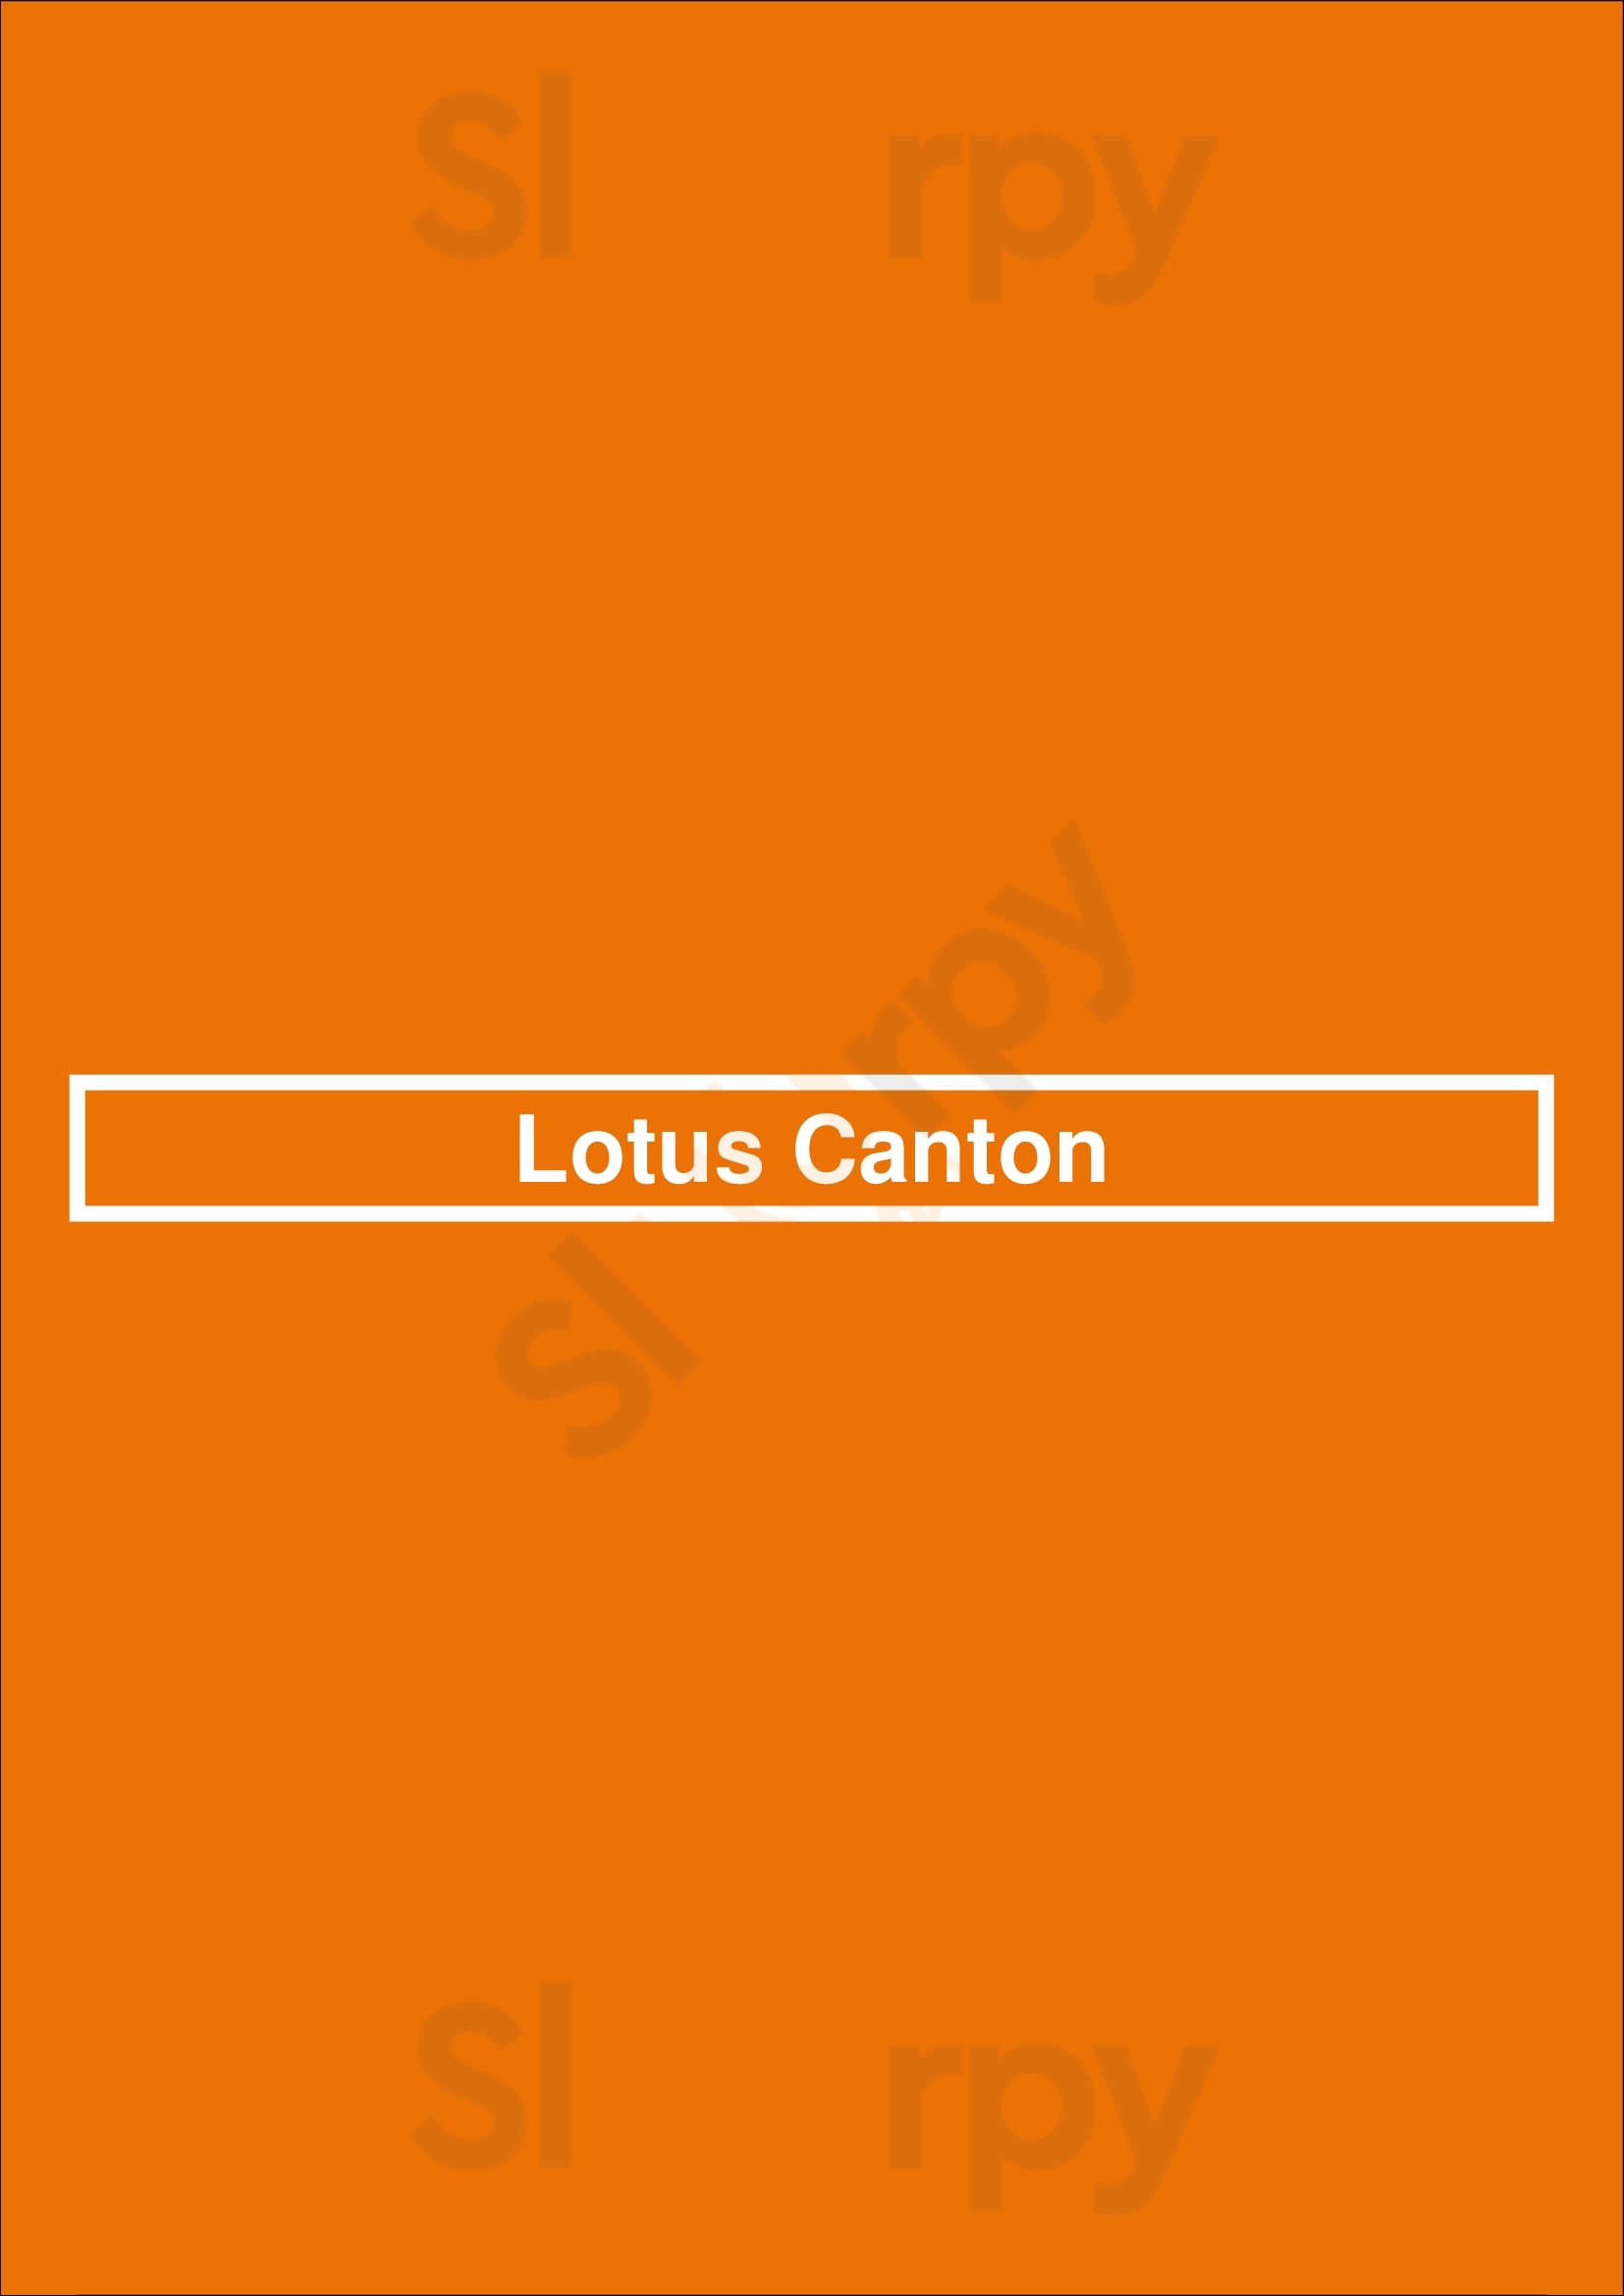 Lotus Canton Bagnolet Menu - 1